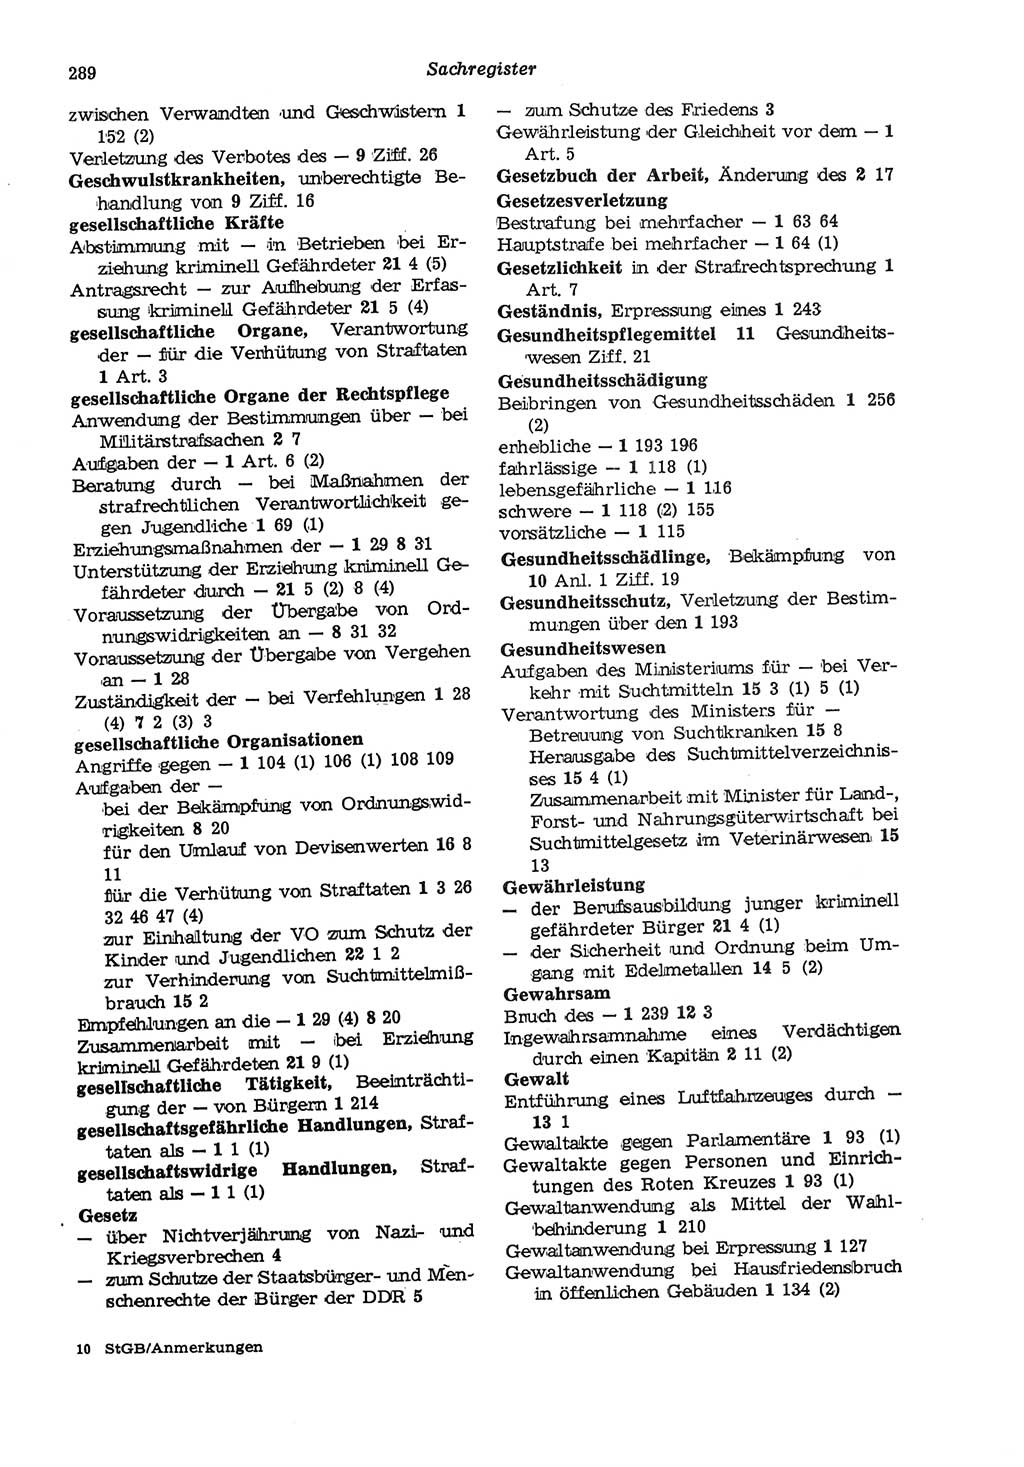 Strafgesetzbuch (StGB) der Deutschen Demokratischen Republik (DDR) und angrenzende Gesetze und Bestimmungen 1975, Seite 289 (StGB DDR Ges. Best. 1975, S. 289)